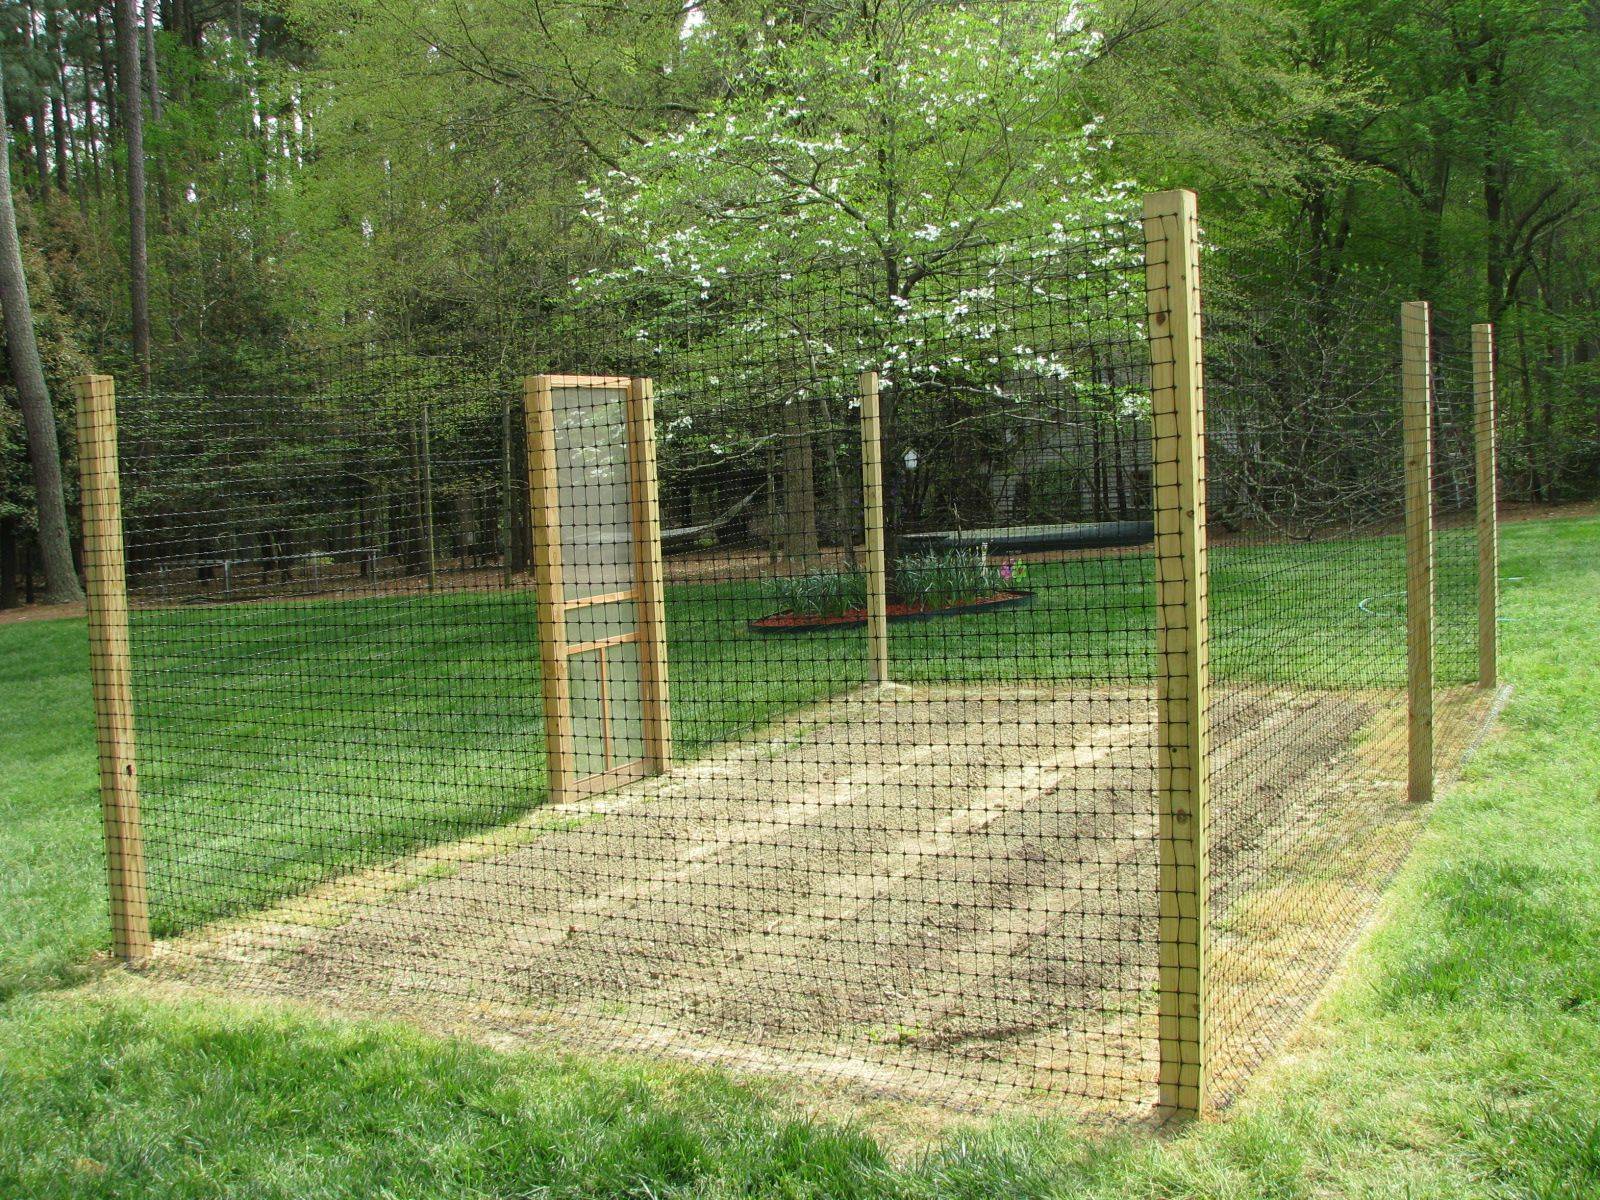 Creative And Cheap Garden Fence Decor Ideas Anchordecocom